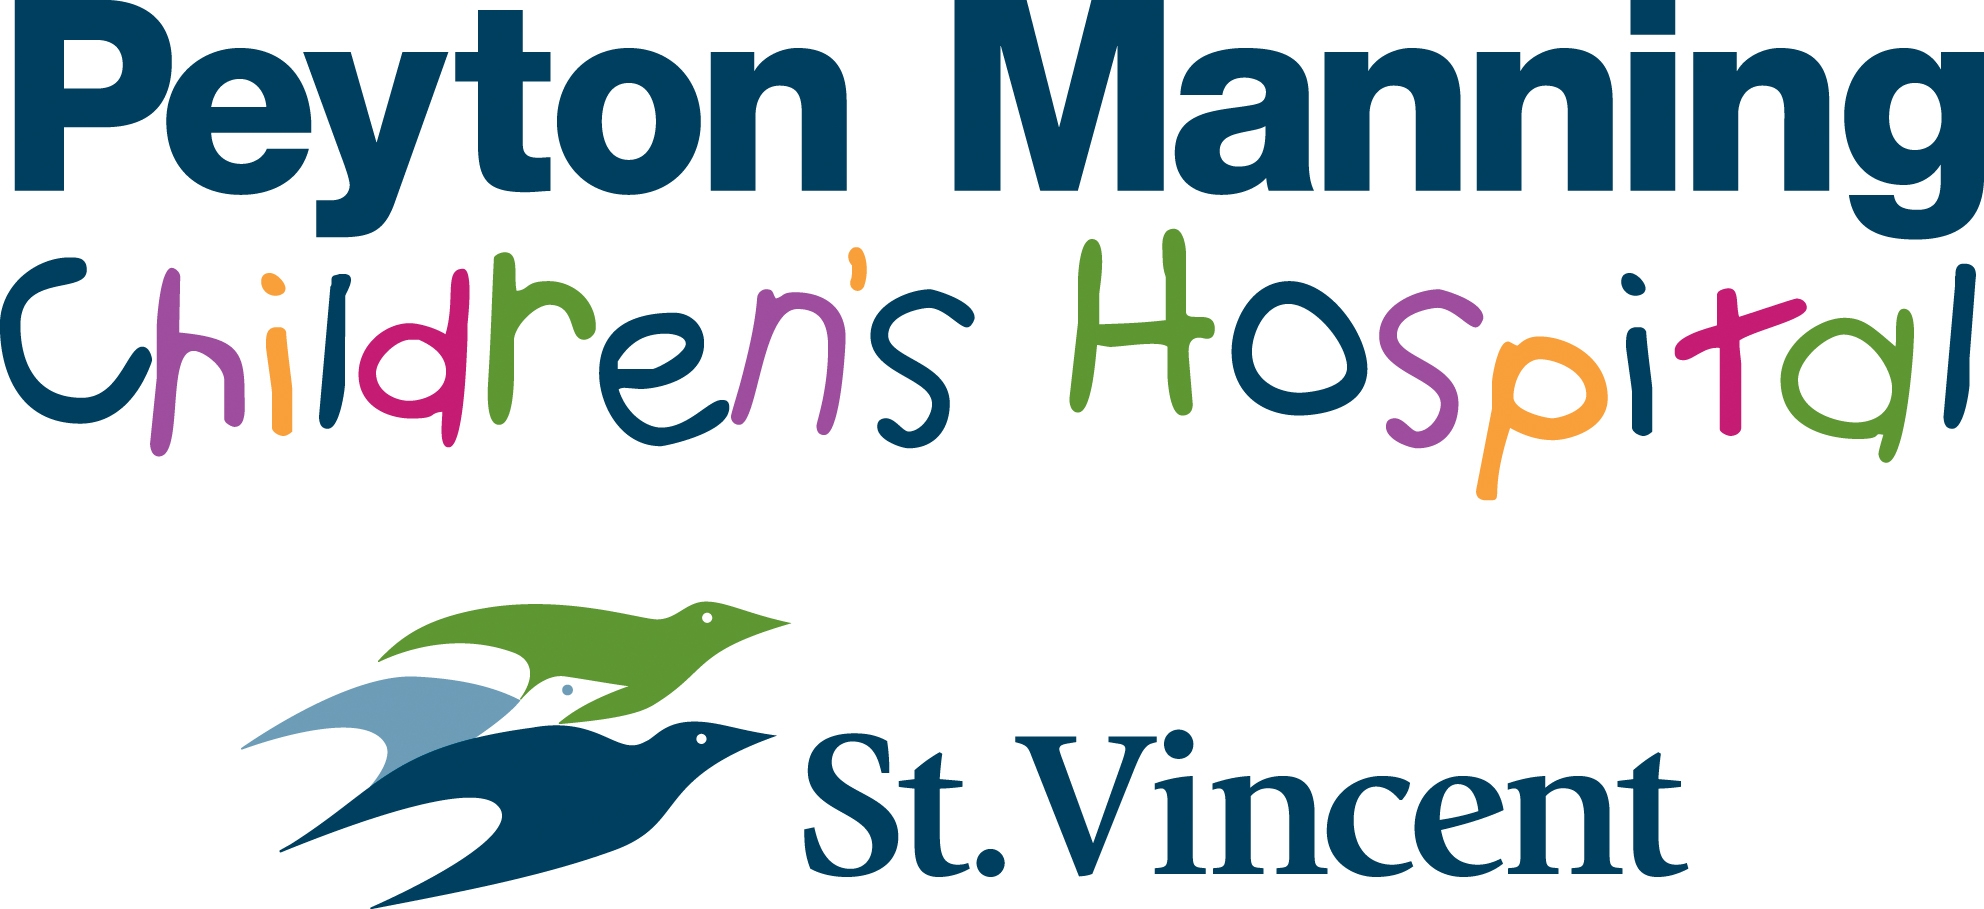 St. Vincent - Peyton Manning Children's Hospital